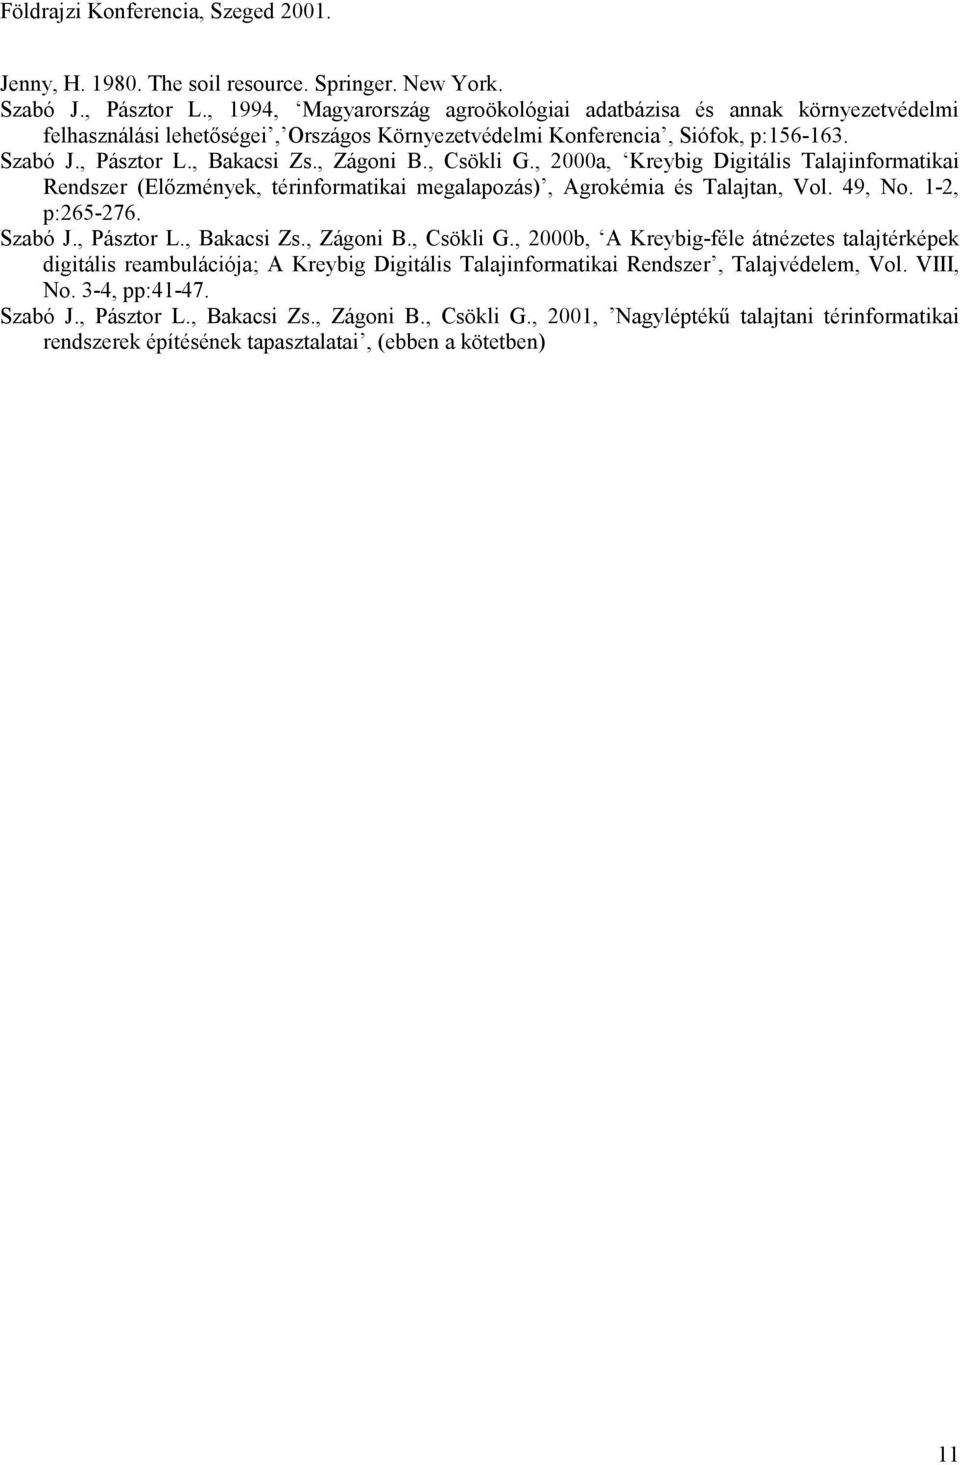 , Zágoni B., Csökli G., 2000a, Kreybig Digitális Talajinformatikai Rendszer (Előzmények, térinformatikai megalapozás), Agrokémia és Talajtan, Vol. 49, No. 1-2, p:265-276. Szabó J., Pásztor L.